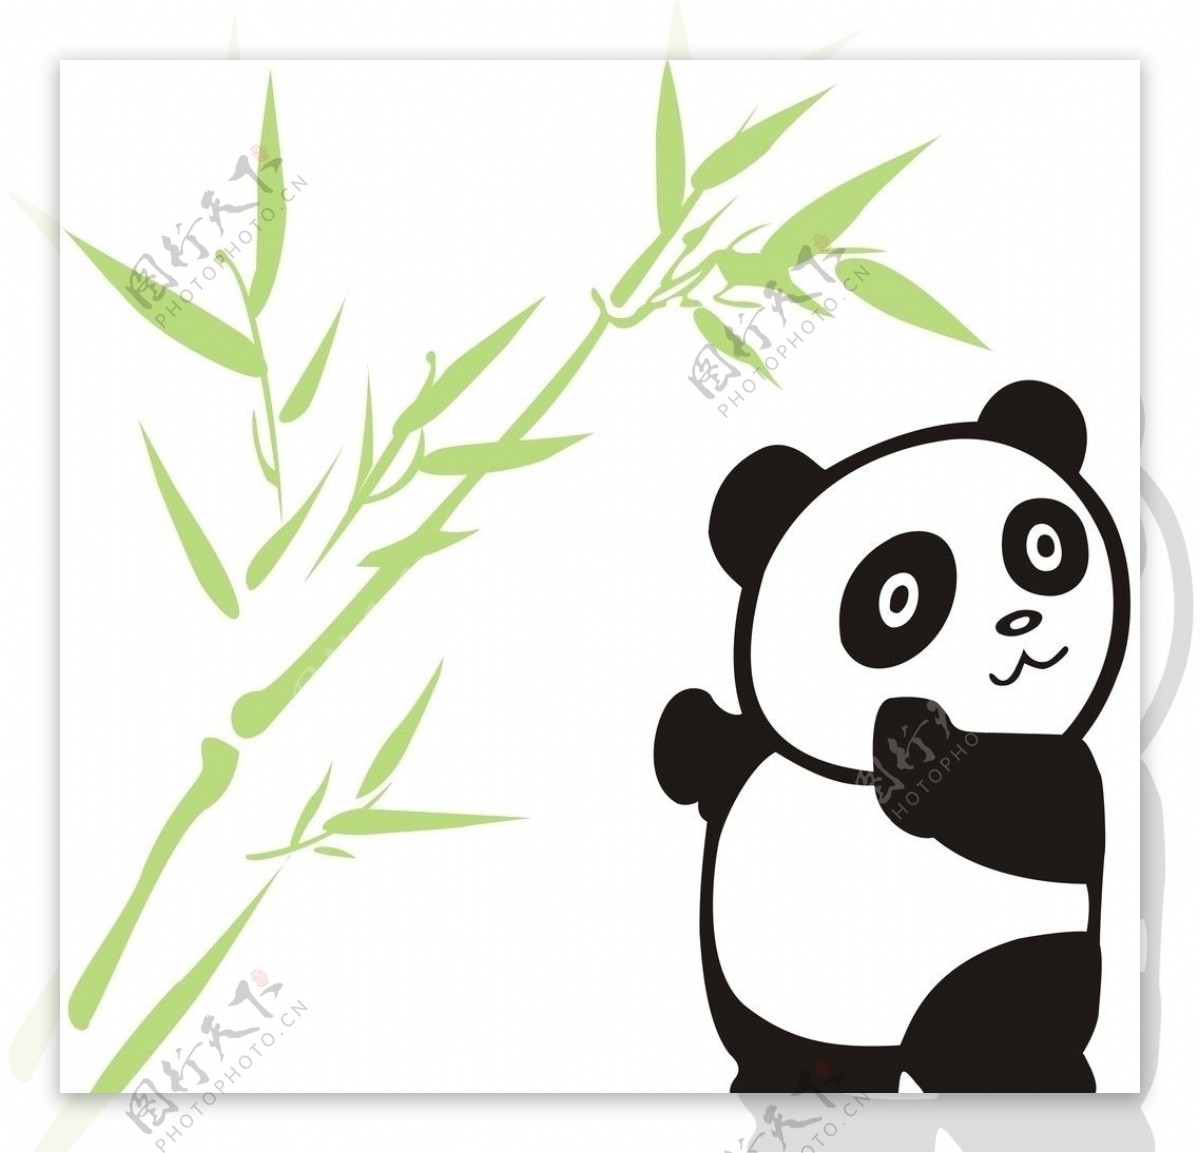 熊猫电器图片